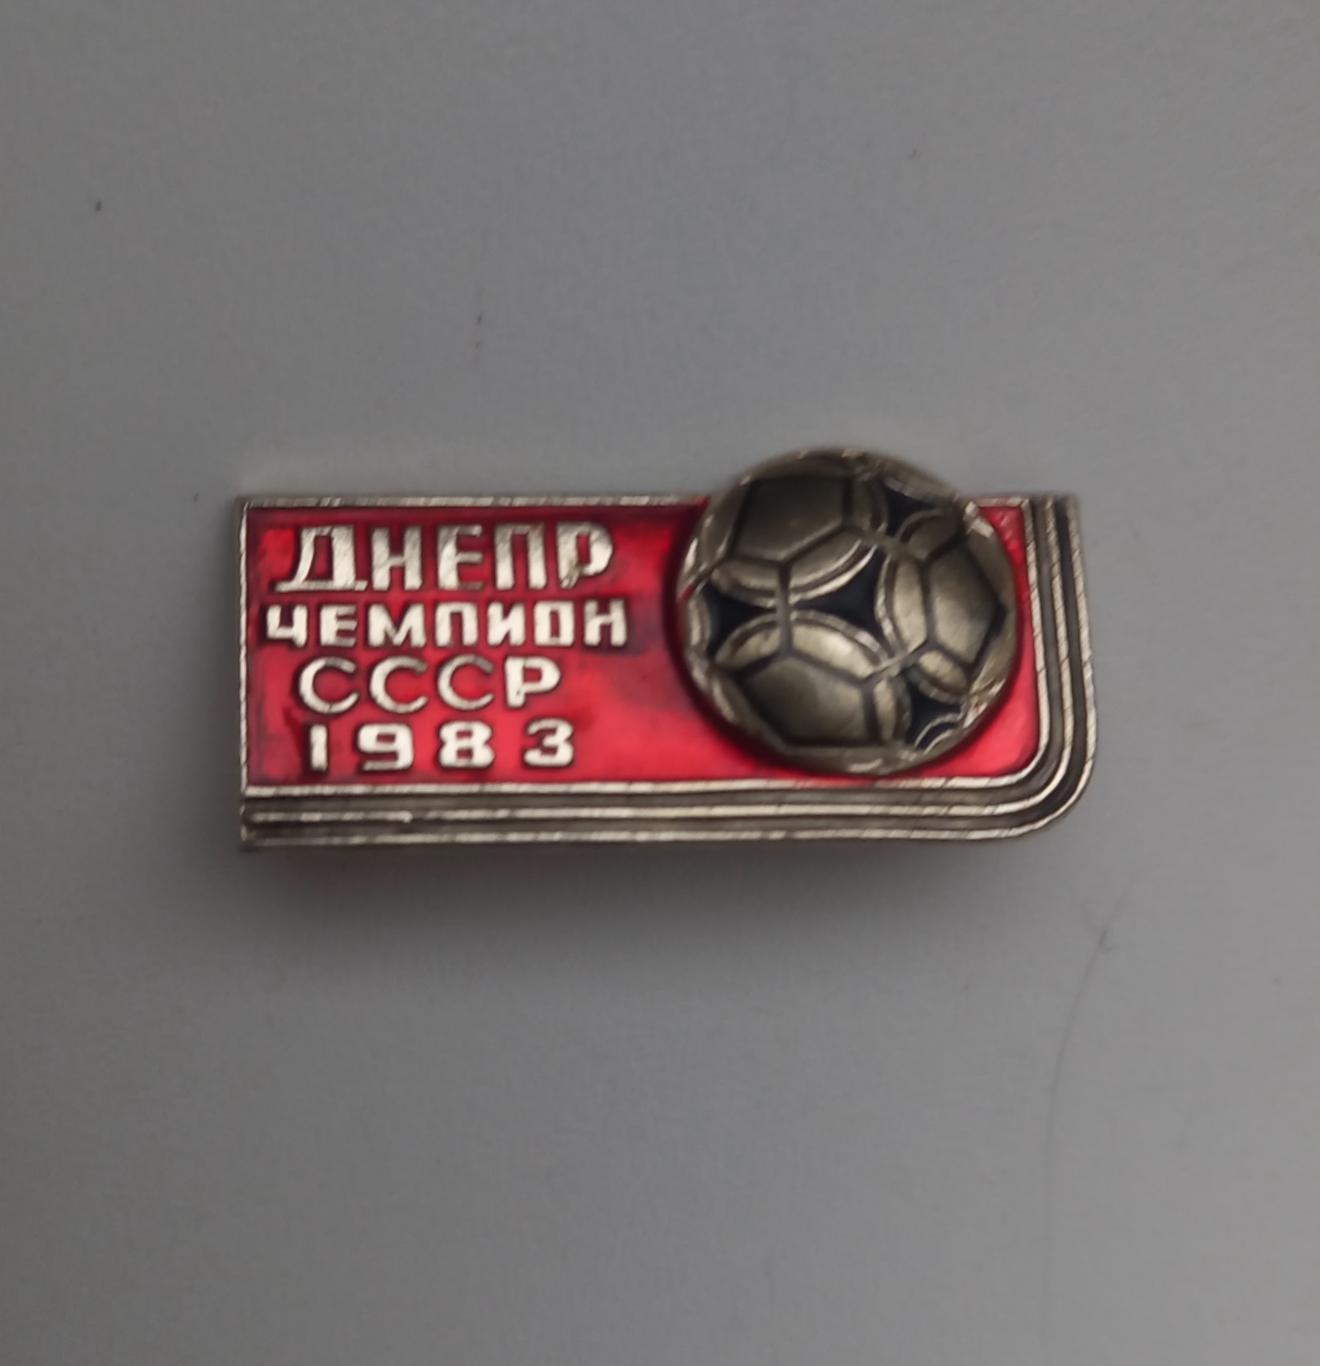 ФК Днепр чемпион СССР 1983 (5)